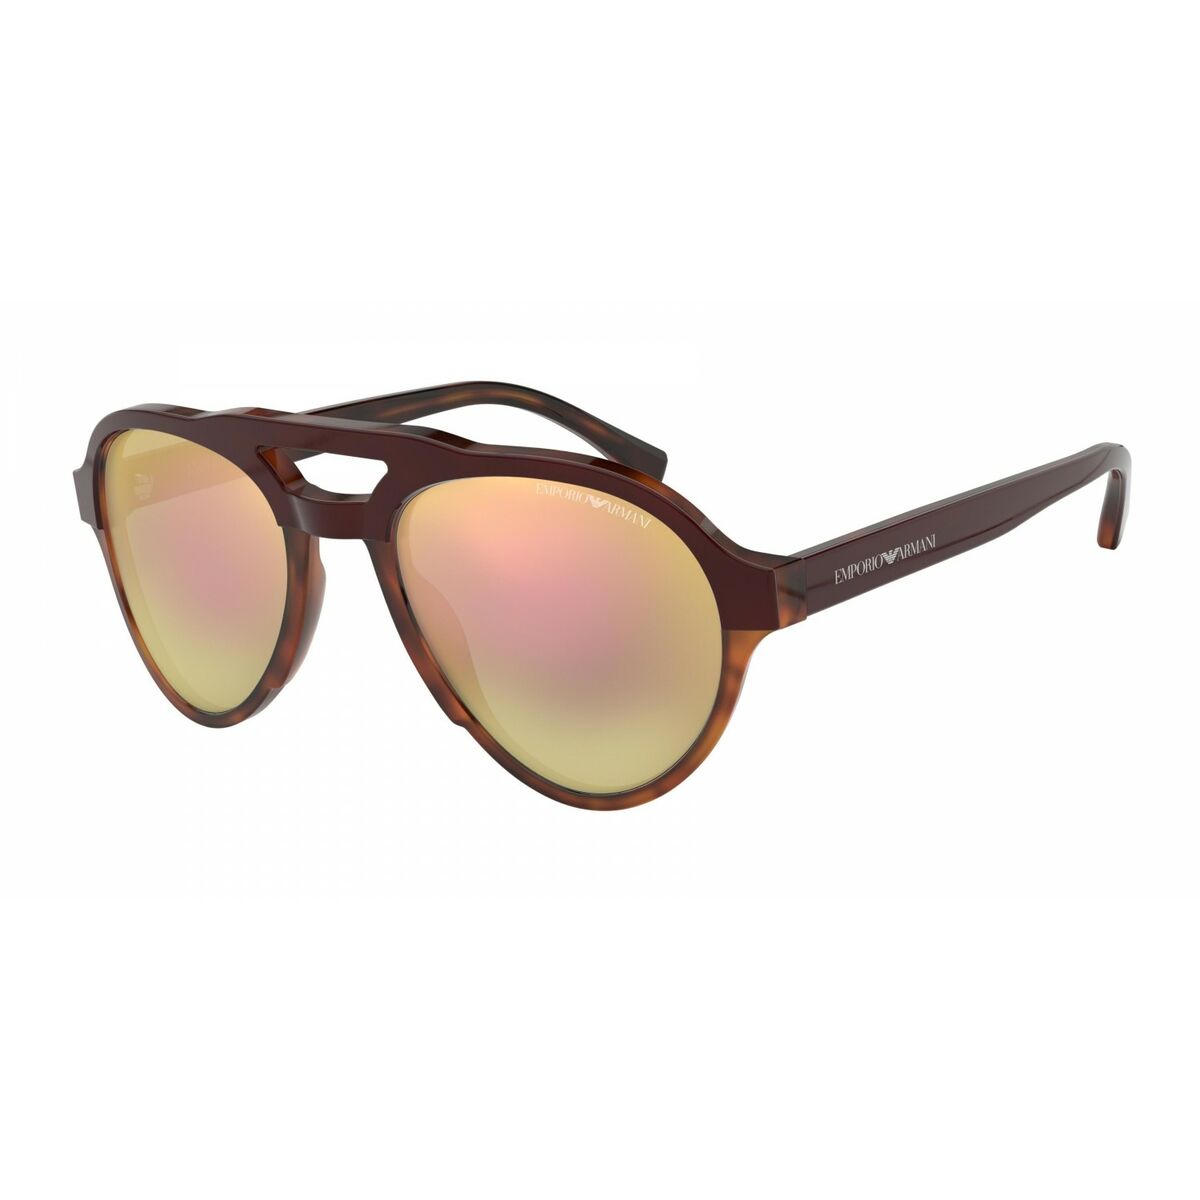 Ladies'Sunglasses Emporio Armani